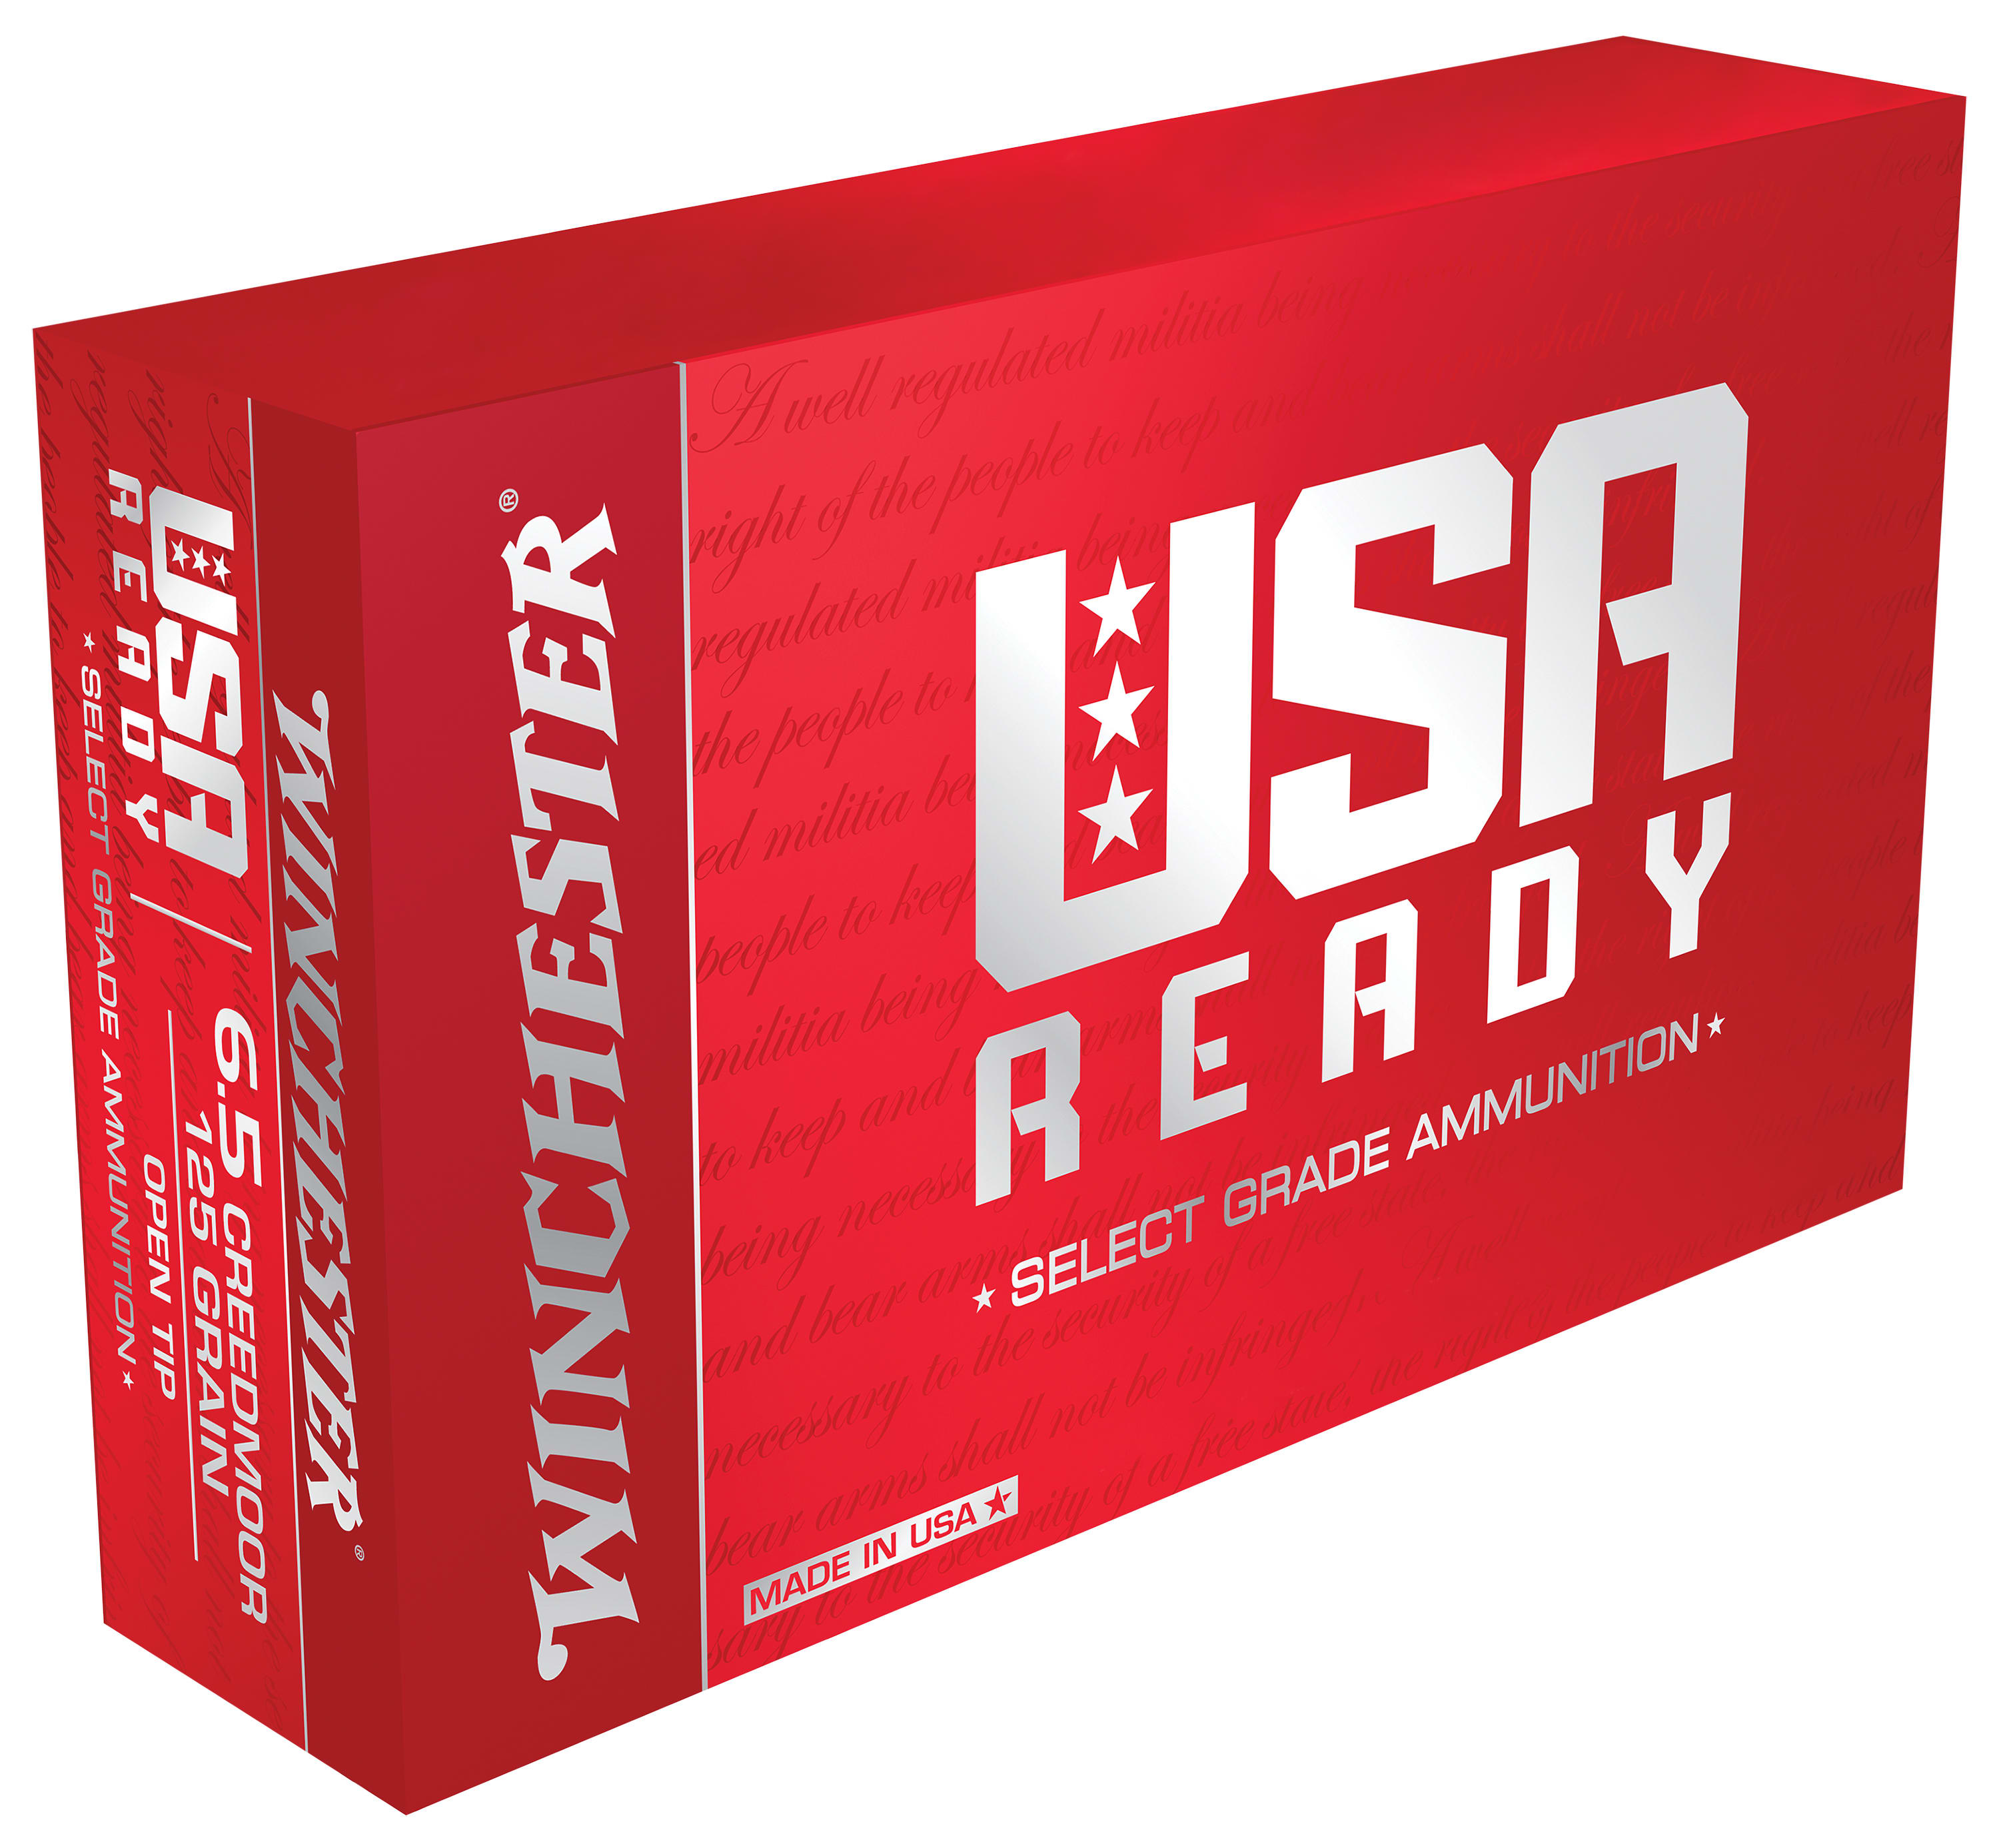 Winchester® USA Ready™ Rifle Ammunition